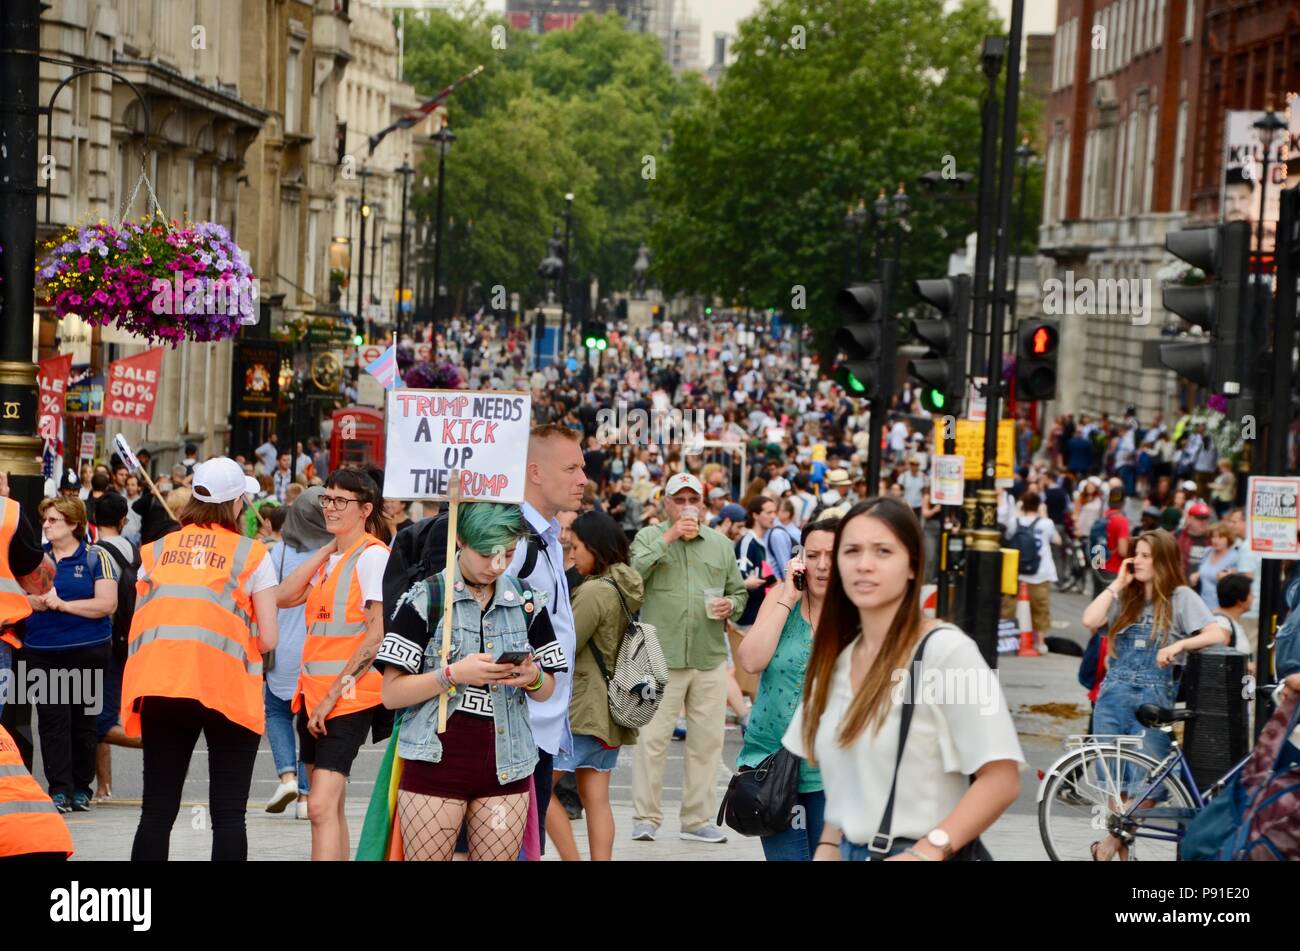 Londra, UK, 13 luglio 2018. anti trump proteste e cartelloni in Trafalgar Square Londra Regno Unito 13 luglio 2018 Credit: simon leigh/Alamy Live News Foto Stock